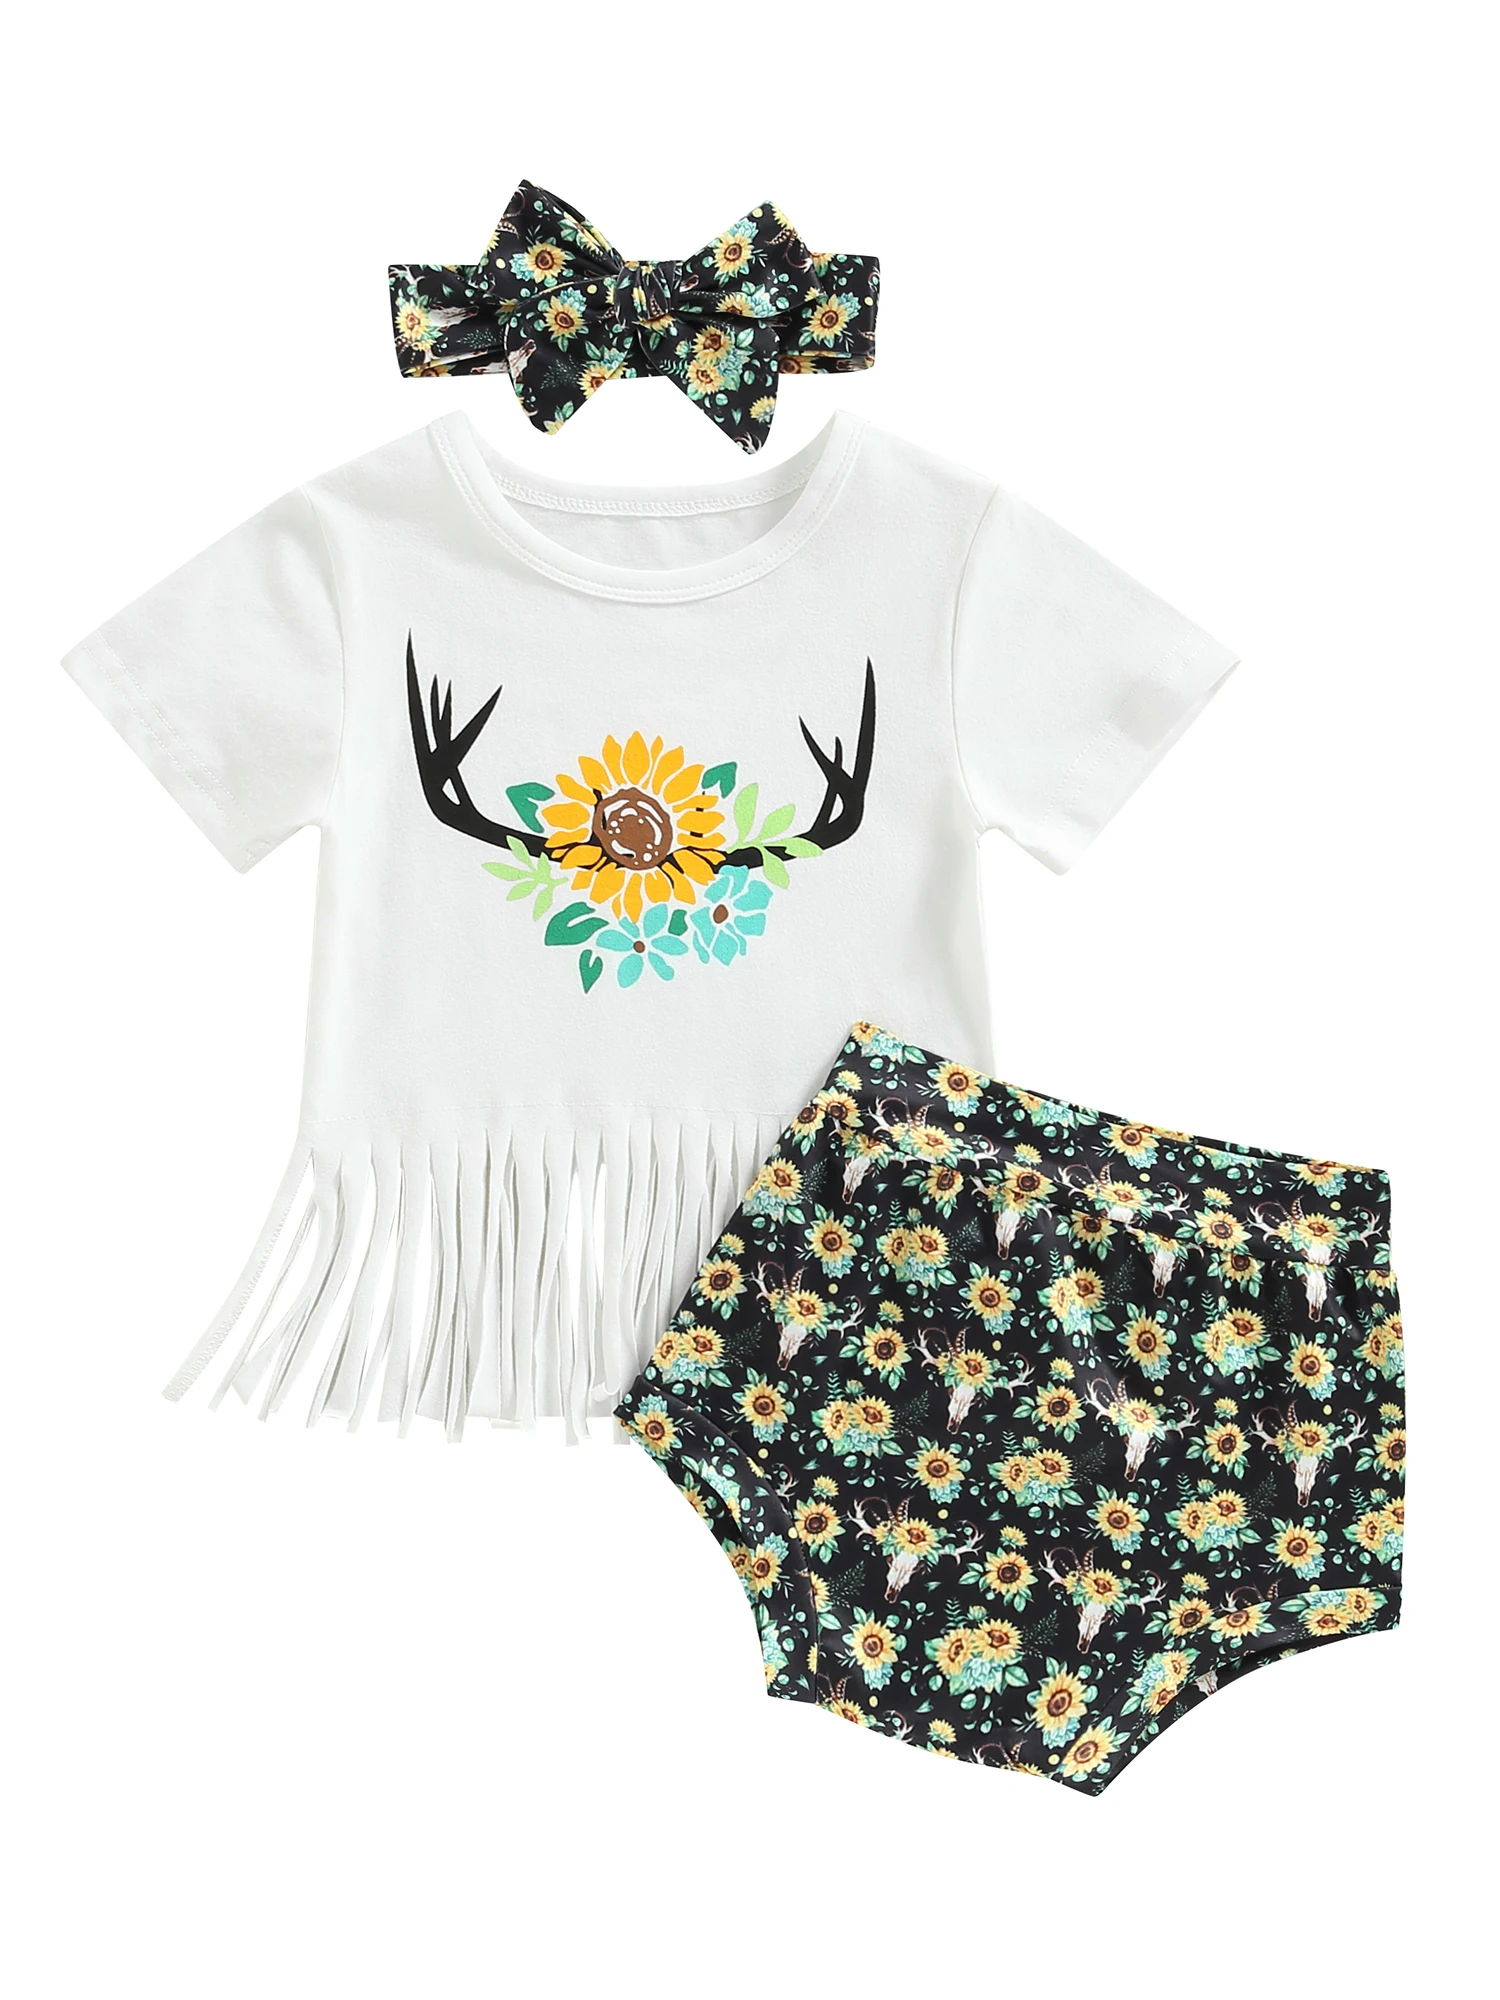 

Одежда для маленьких девочек в западном стиле, футболка с принтом коровы и букв, топы с кисточками, шорты с коротким рукавом и принтом подсолнухов